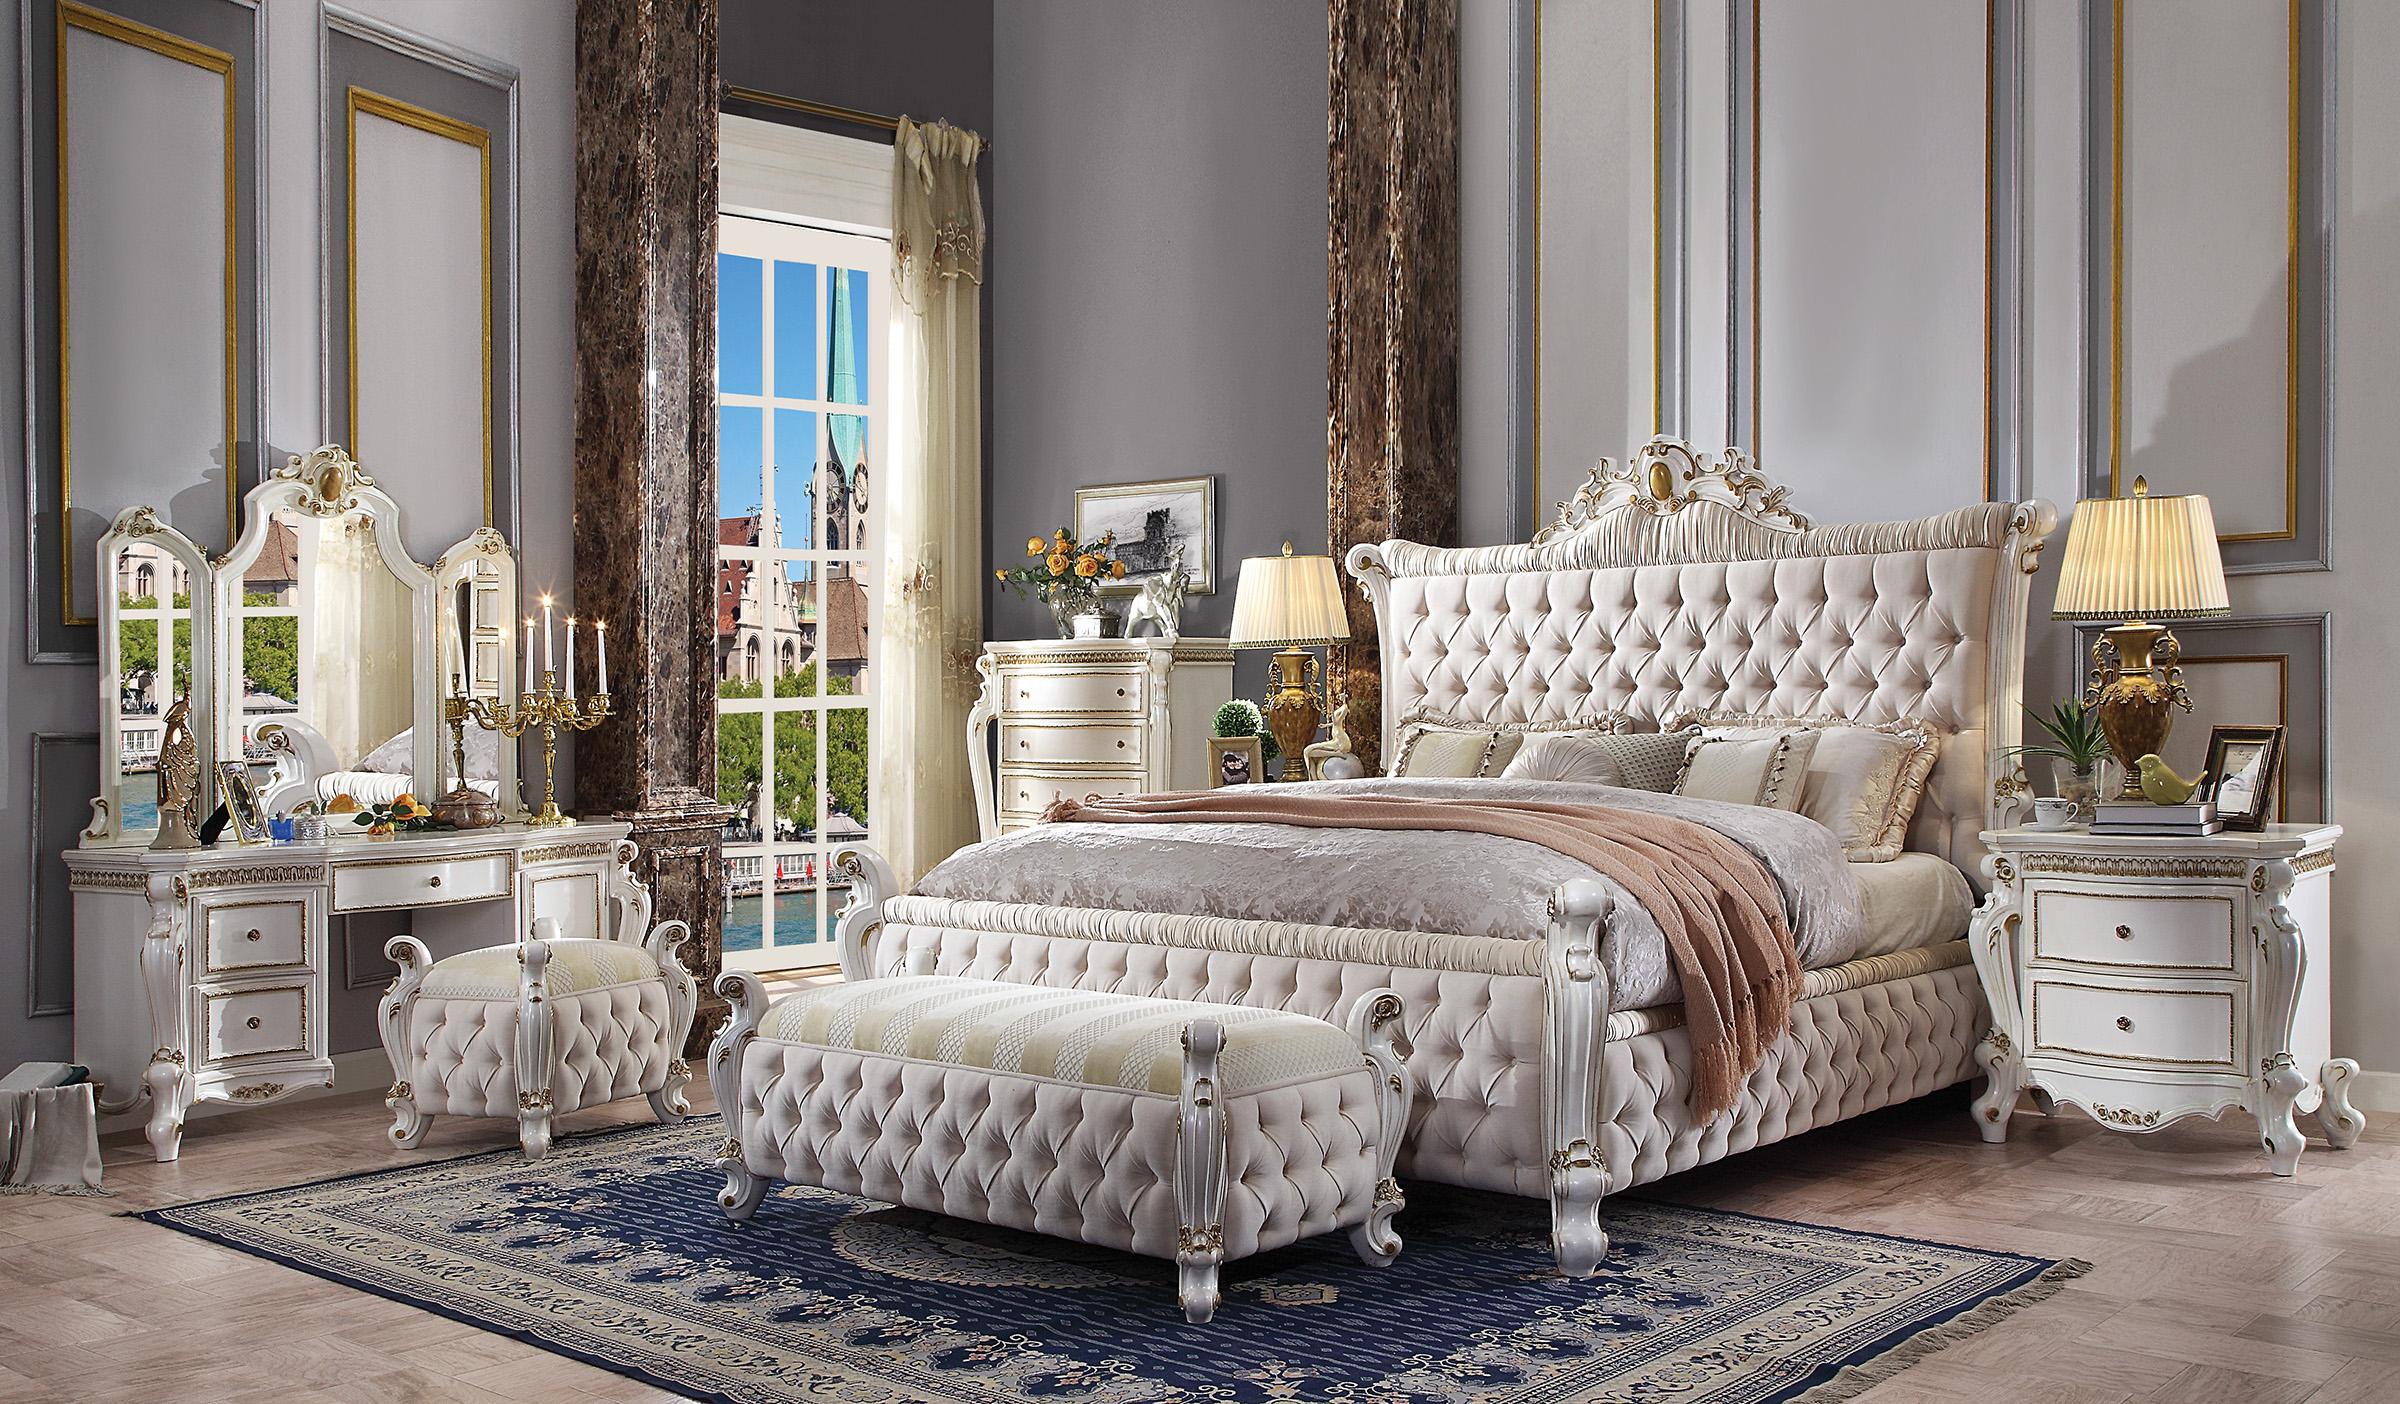 

    
Endicott King Panel Upholstered Standard Bedroom Set 5 Pcs Classic
